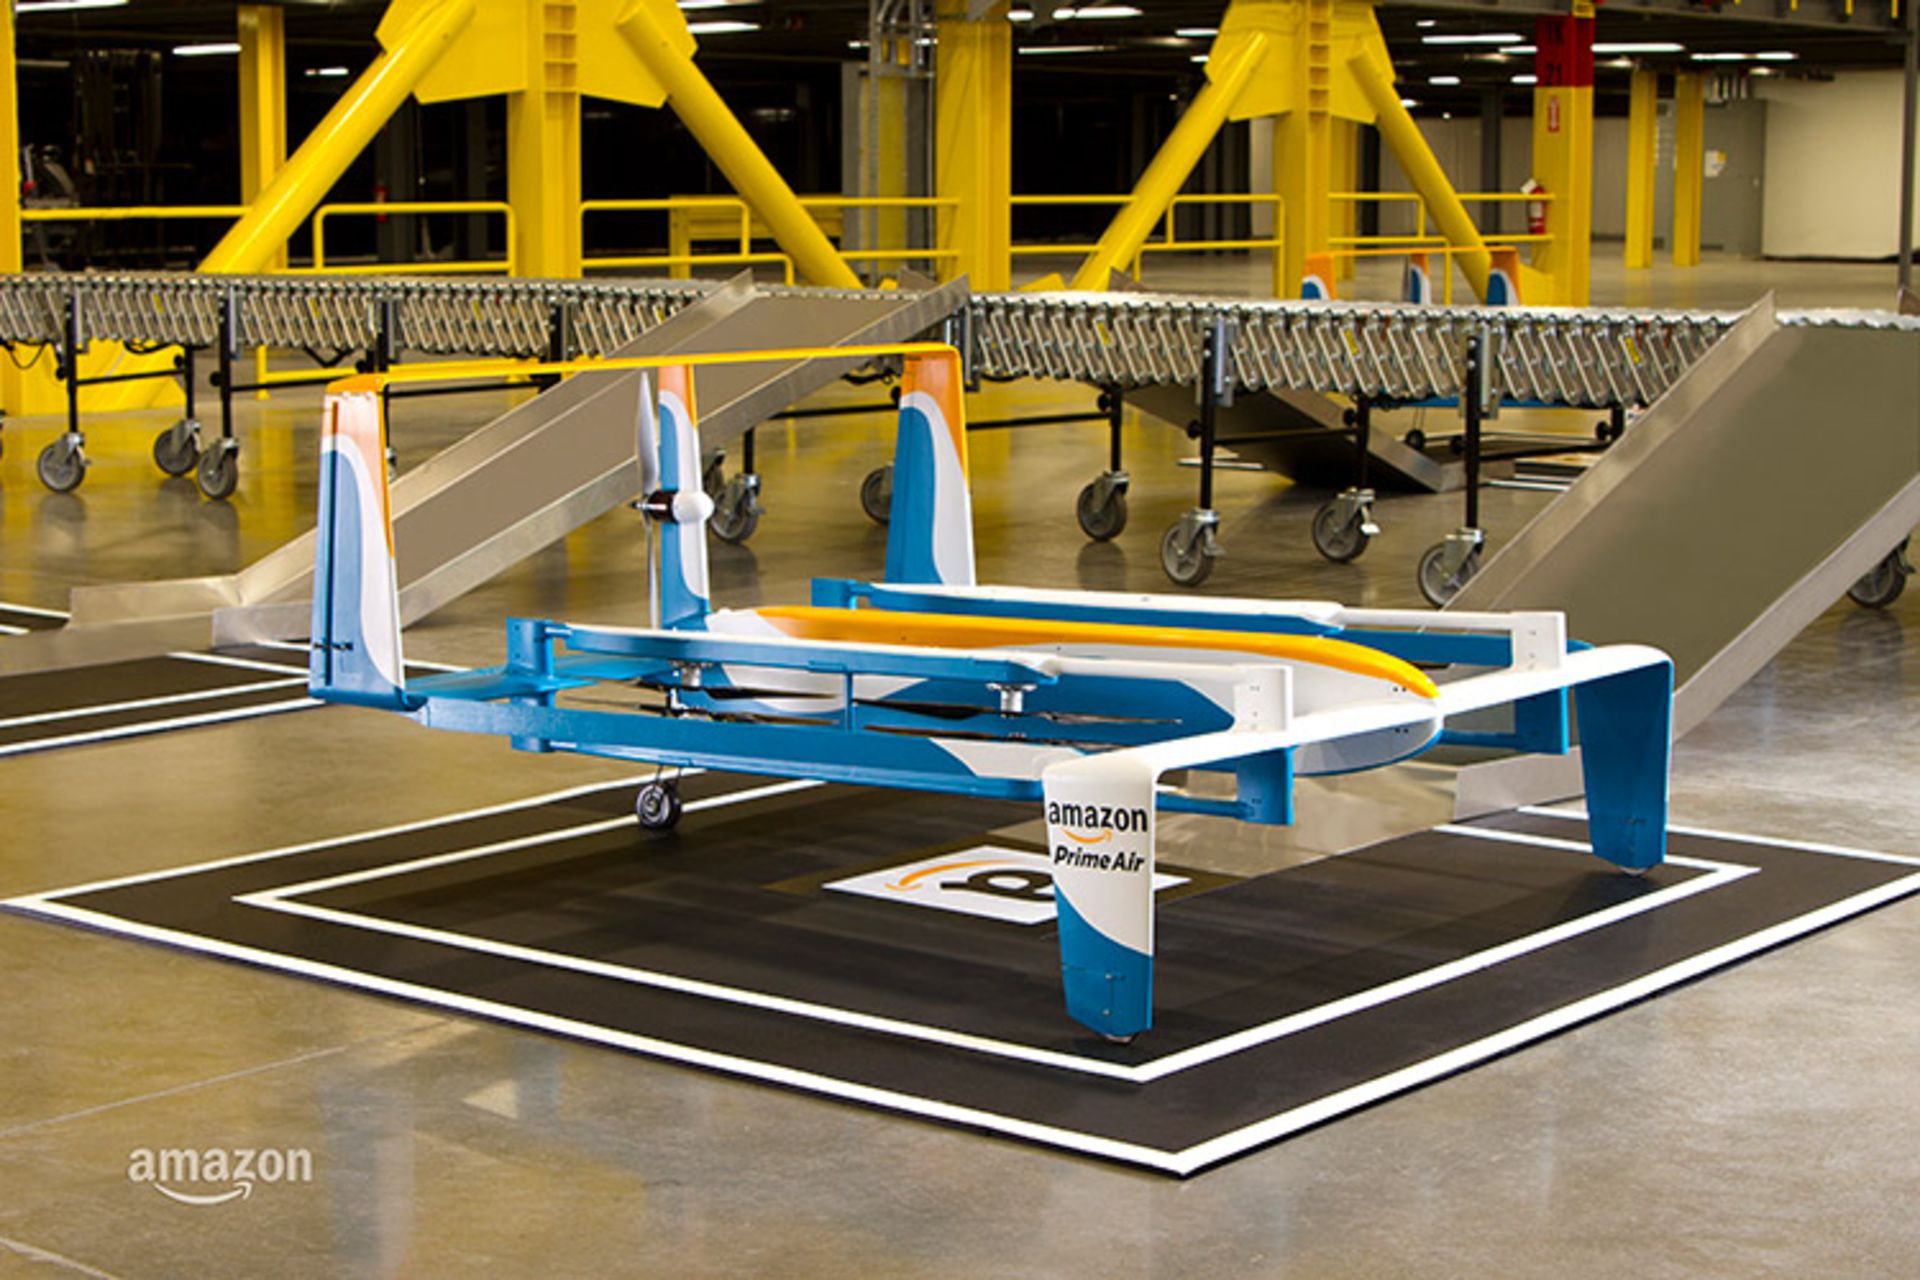 مرجع متخصصين ايران پهپاد تحويل كالاي آمازون / Amazon Delivery Drone